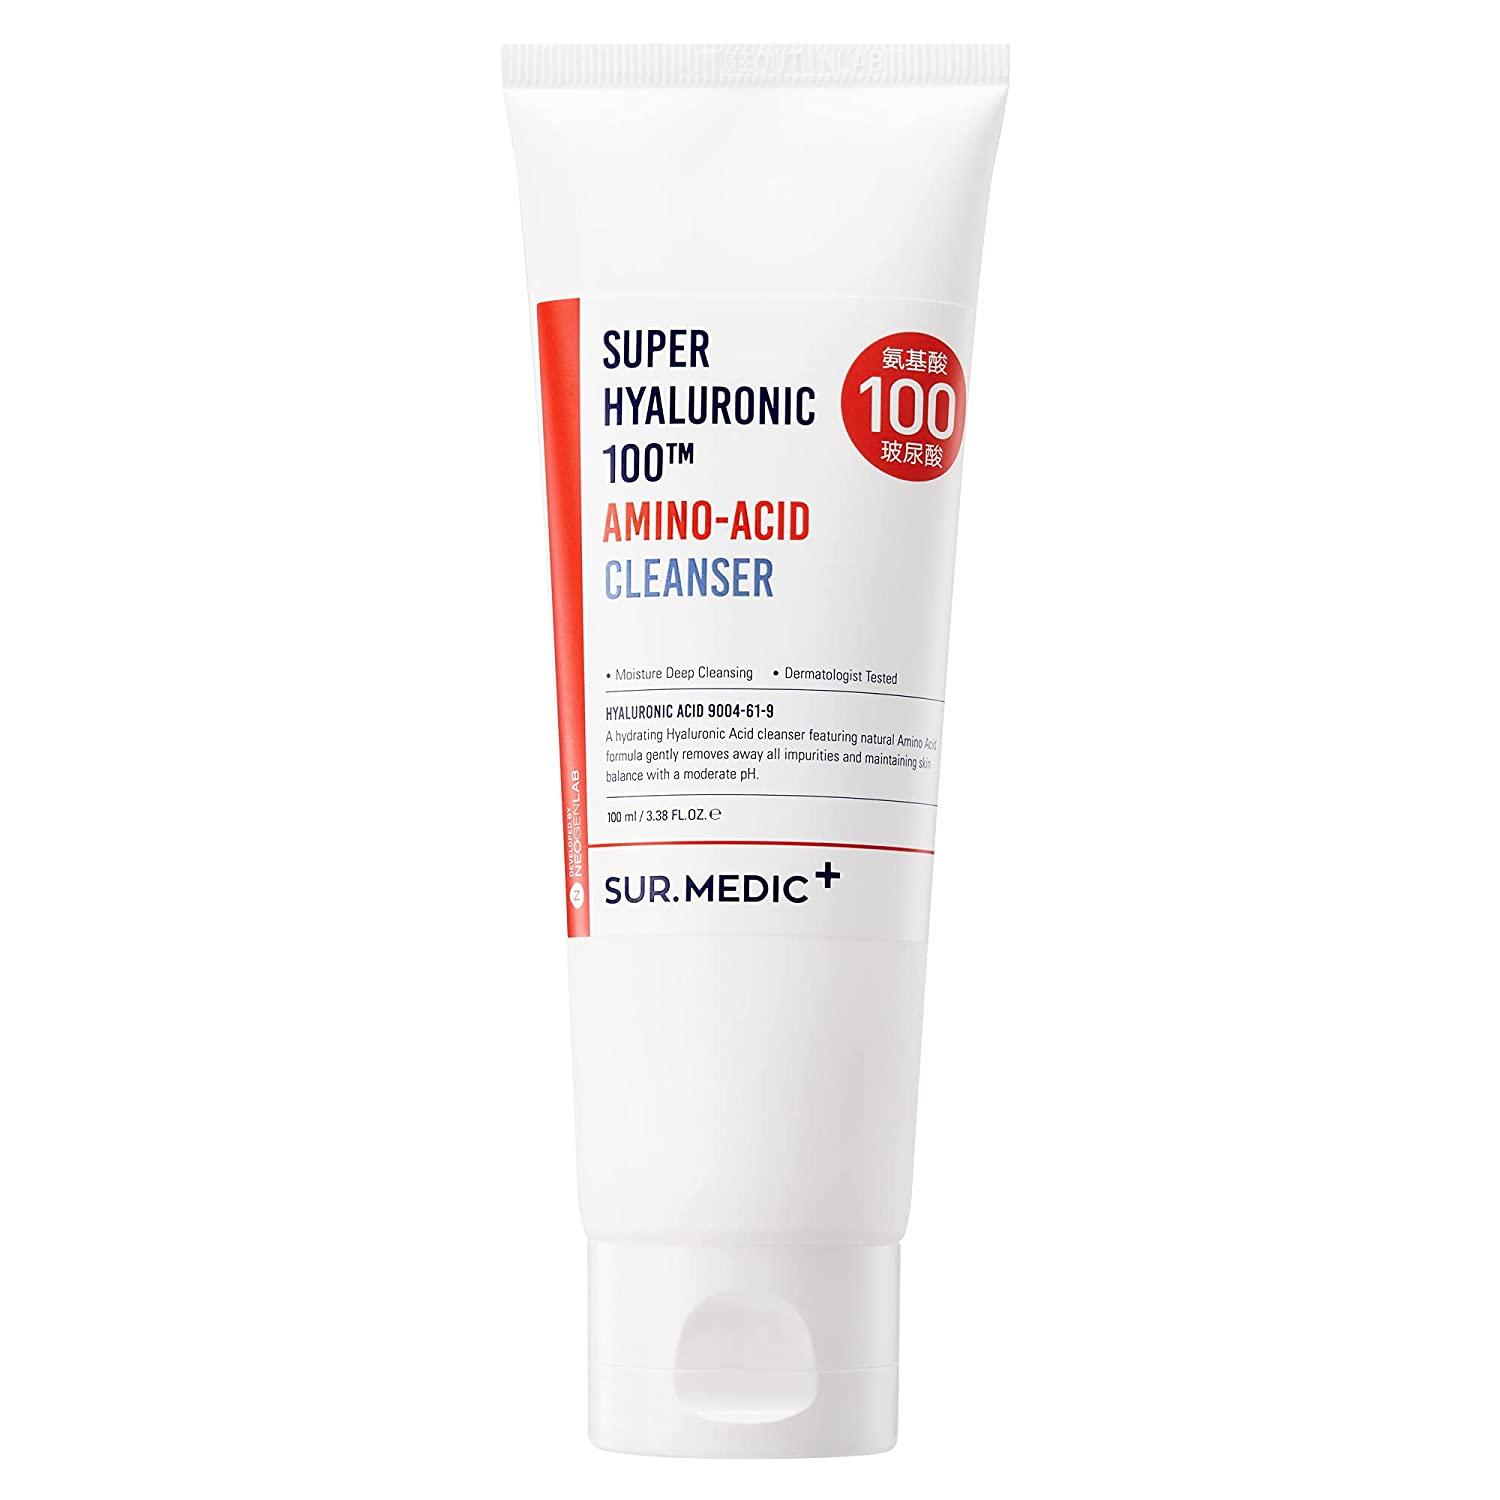 Super Hyaluronic 100TM Amino Acid Cleanser